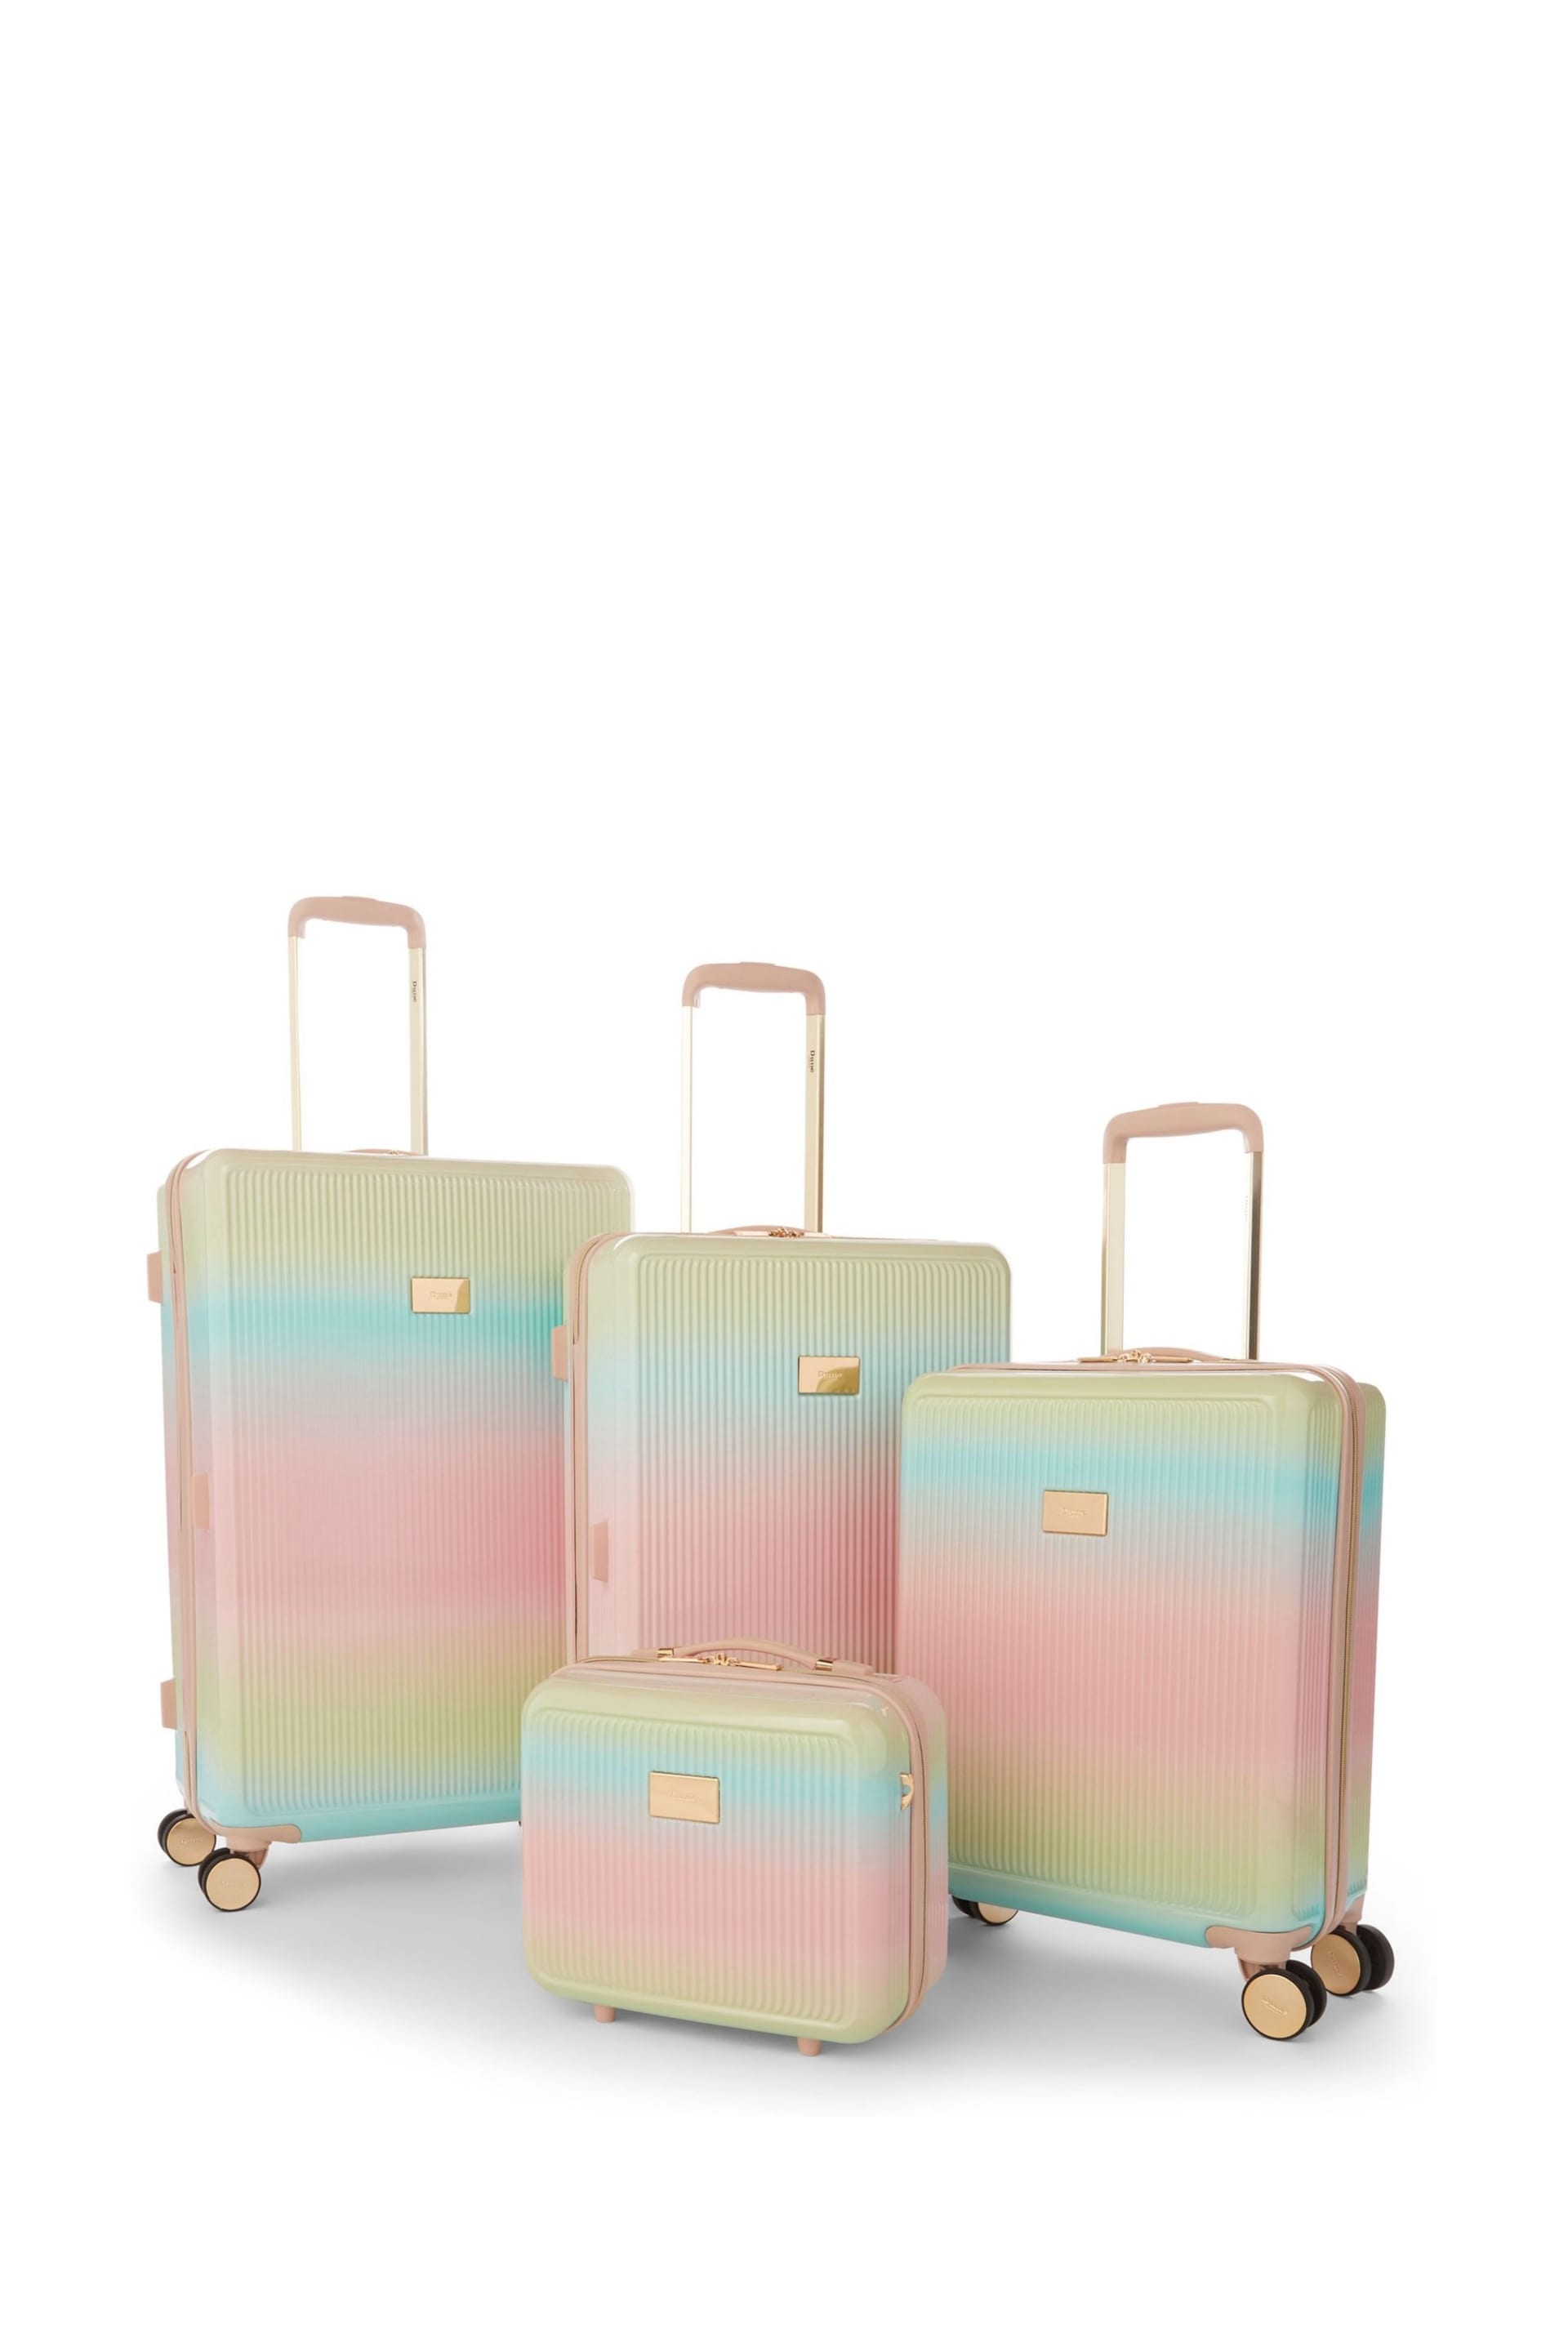 Dune London Pink Olive Medium Suitcase - Image 6 of 6